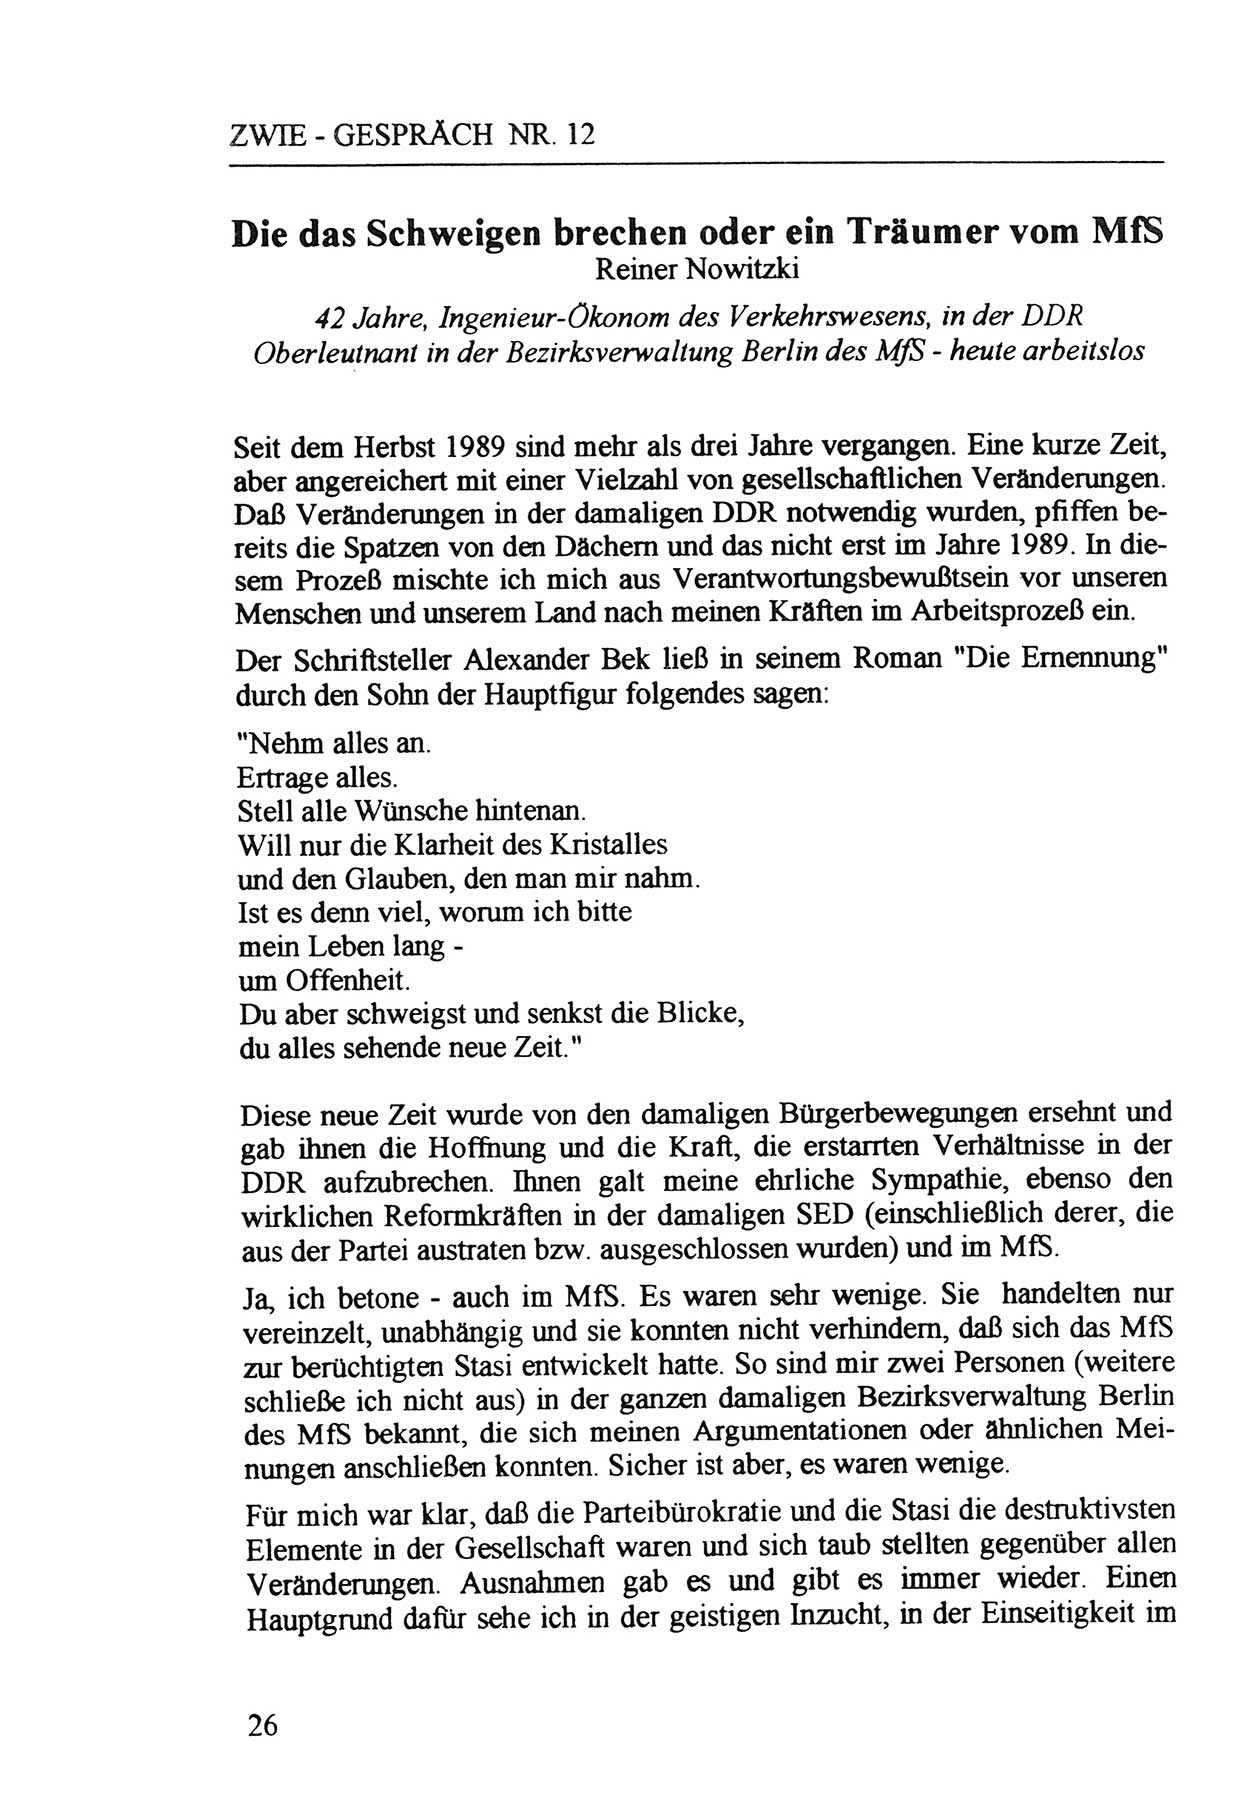 Zwie-Gespräch, Beiträge zur Aufarbeitung der Staatssicherheits-Vergangenheit [Deutsche Demokratische Republik (DDR)], Ausgabe Nr. 12, Berlin 1993, Seite 26 (Zwie-Gespr. Ausg. 12 1993, S. 26)